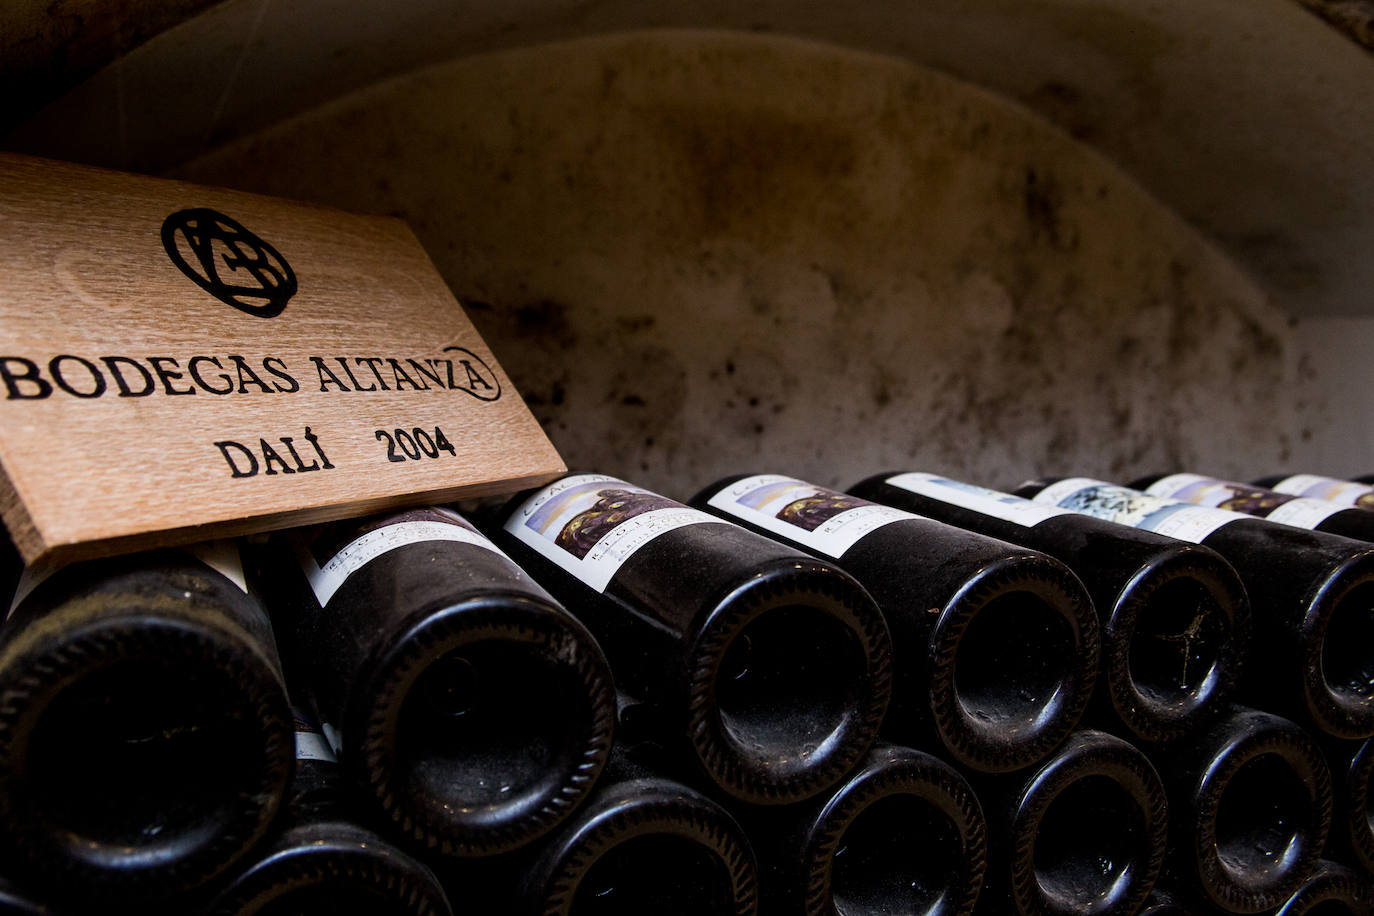 Fotos: Los vinos de Altanza lucen nuevas etiquetas